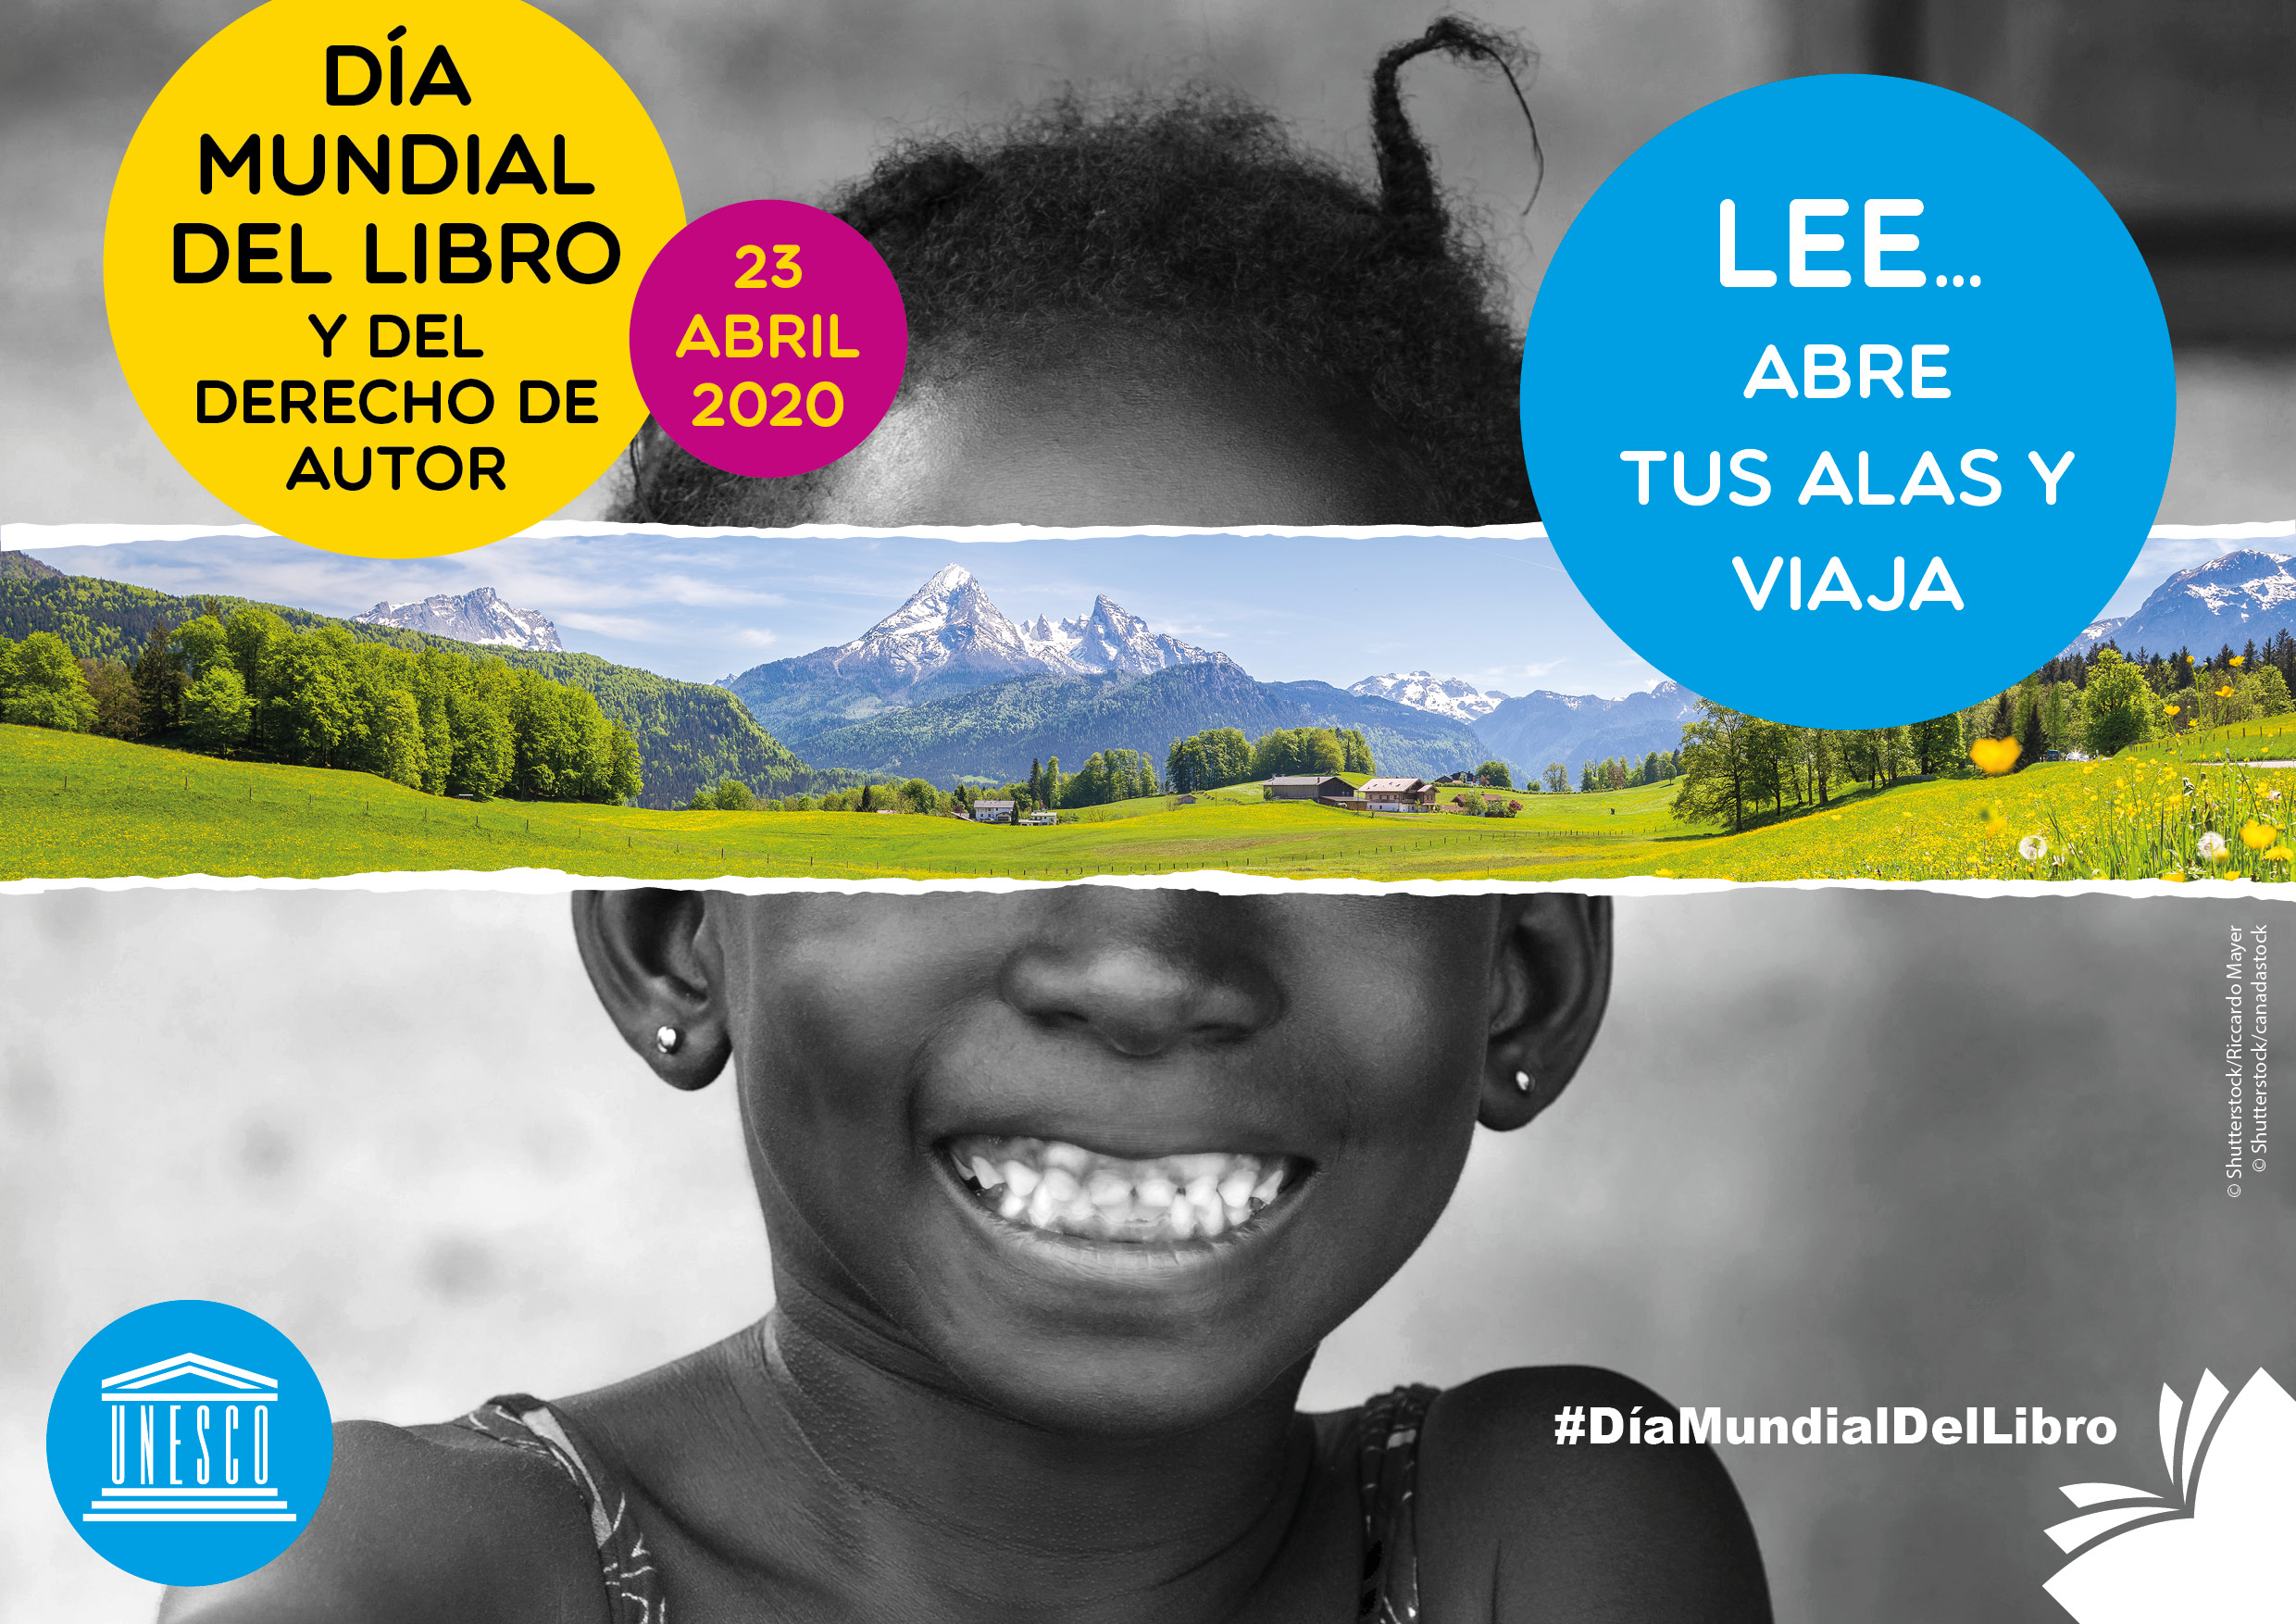 Cartel, Afiche, Poster, Eslogan - Día Mundial del Libro y del Derecho de Autor 2020 - UNESCO. LEE... abre tus alas y viaja #DíaMundialDelLibro